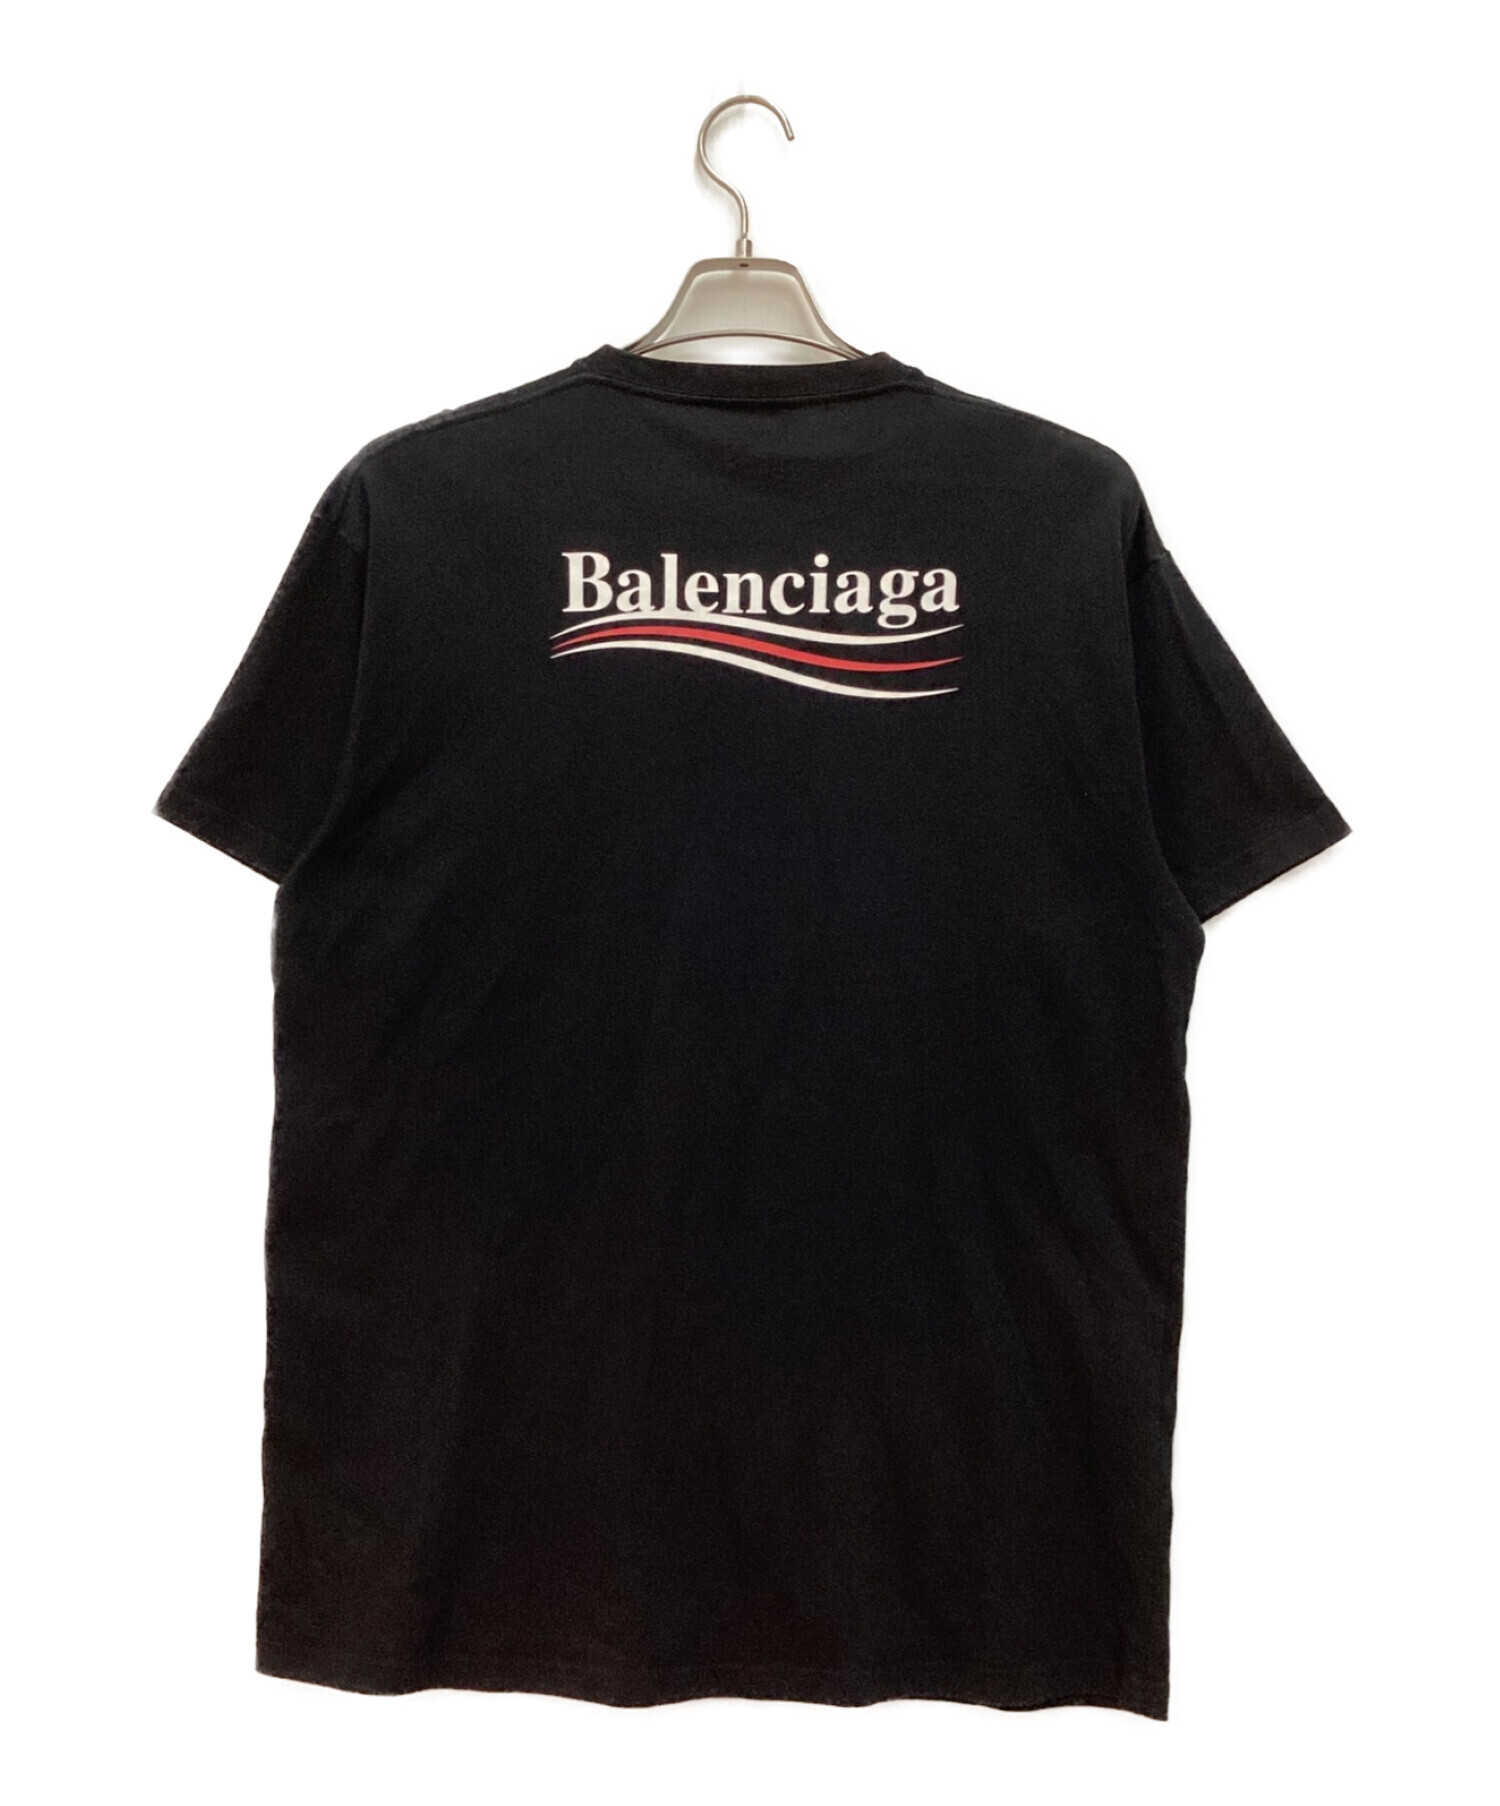 BALENCIAGA バレンシアガ キャンペーンロゴ Tシャツ XS